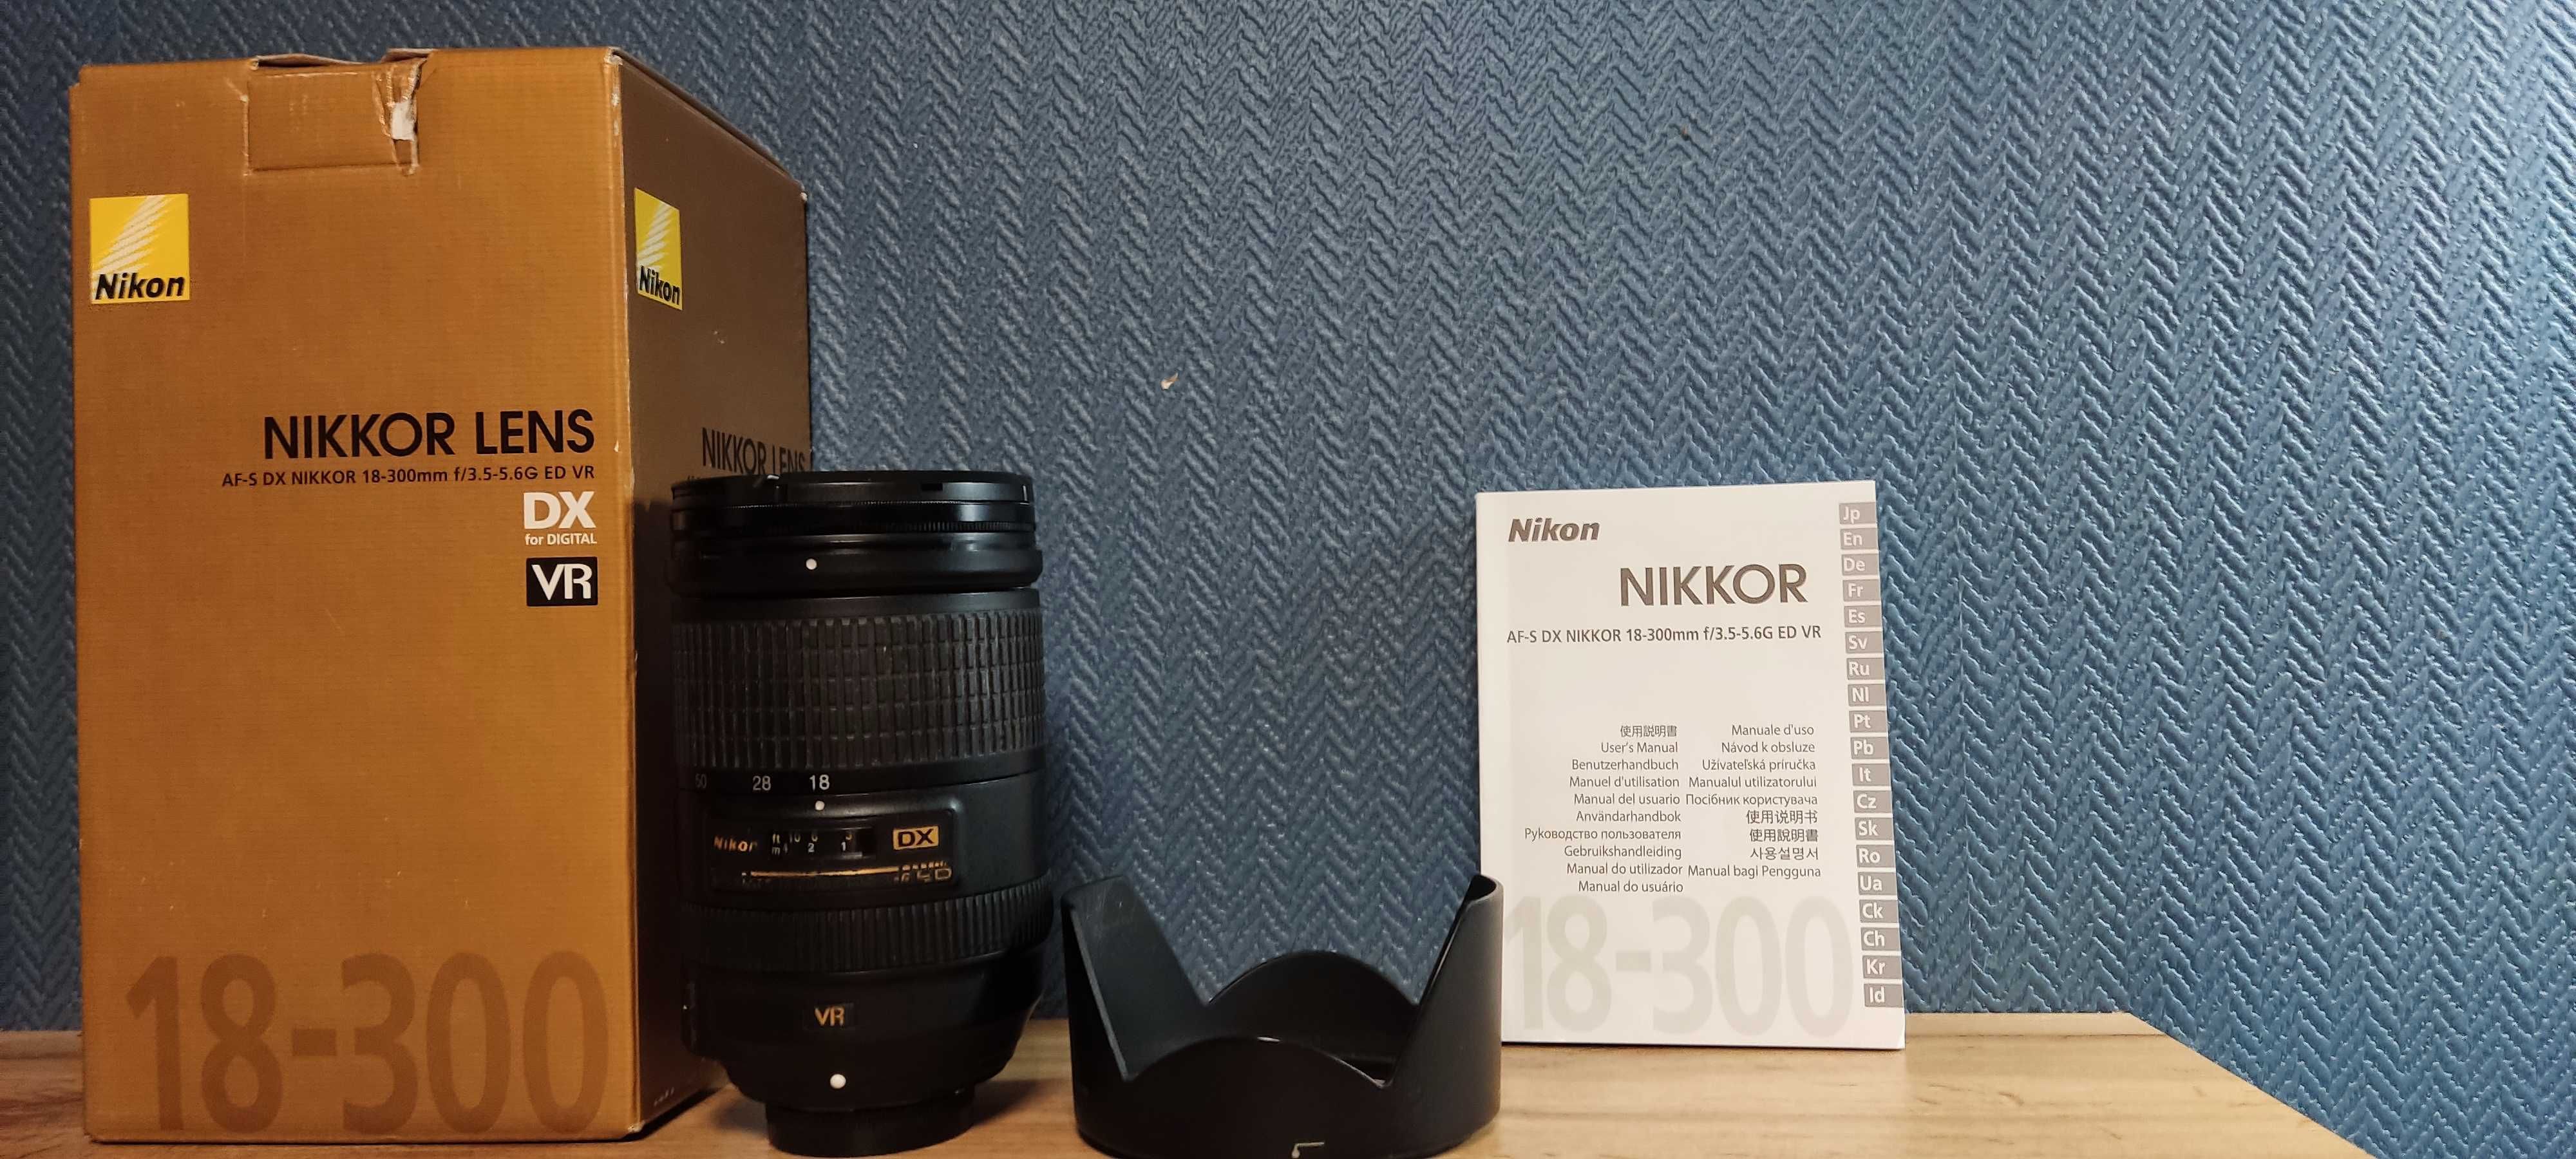 Nikon Nikkor 18-300mm f/3.5-5.6G ED VR AF-S DX